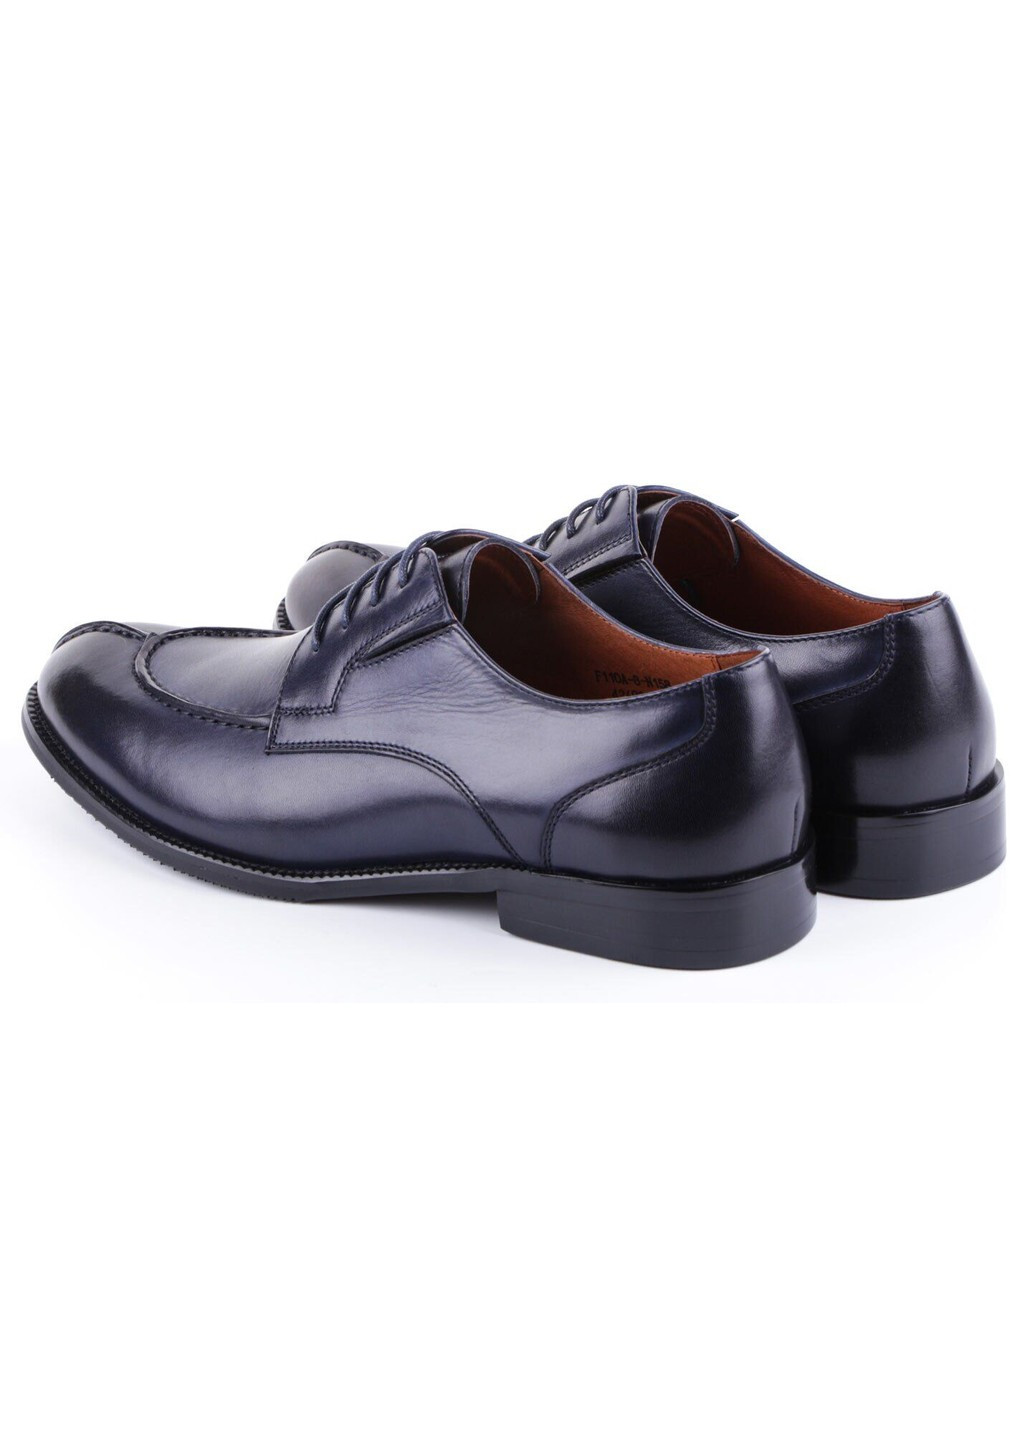 Синие мужские туфли классические 11081 Lido Marinozzi на шнурках